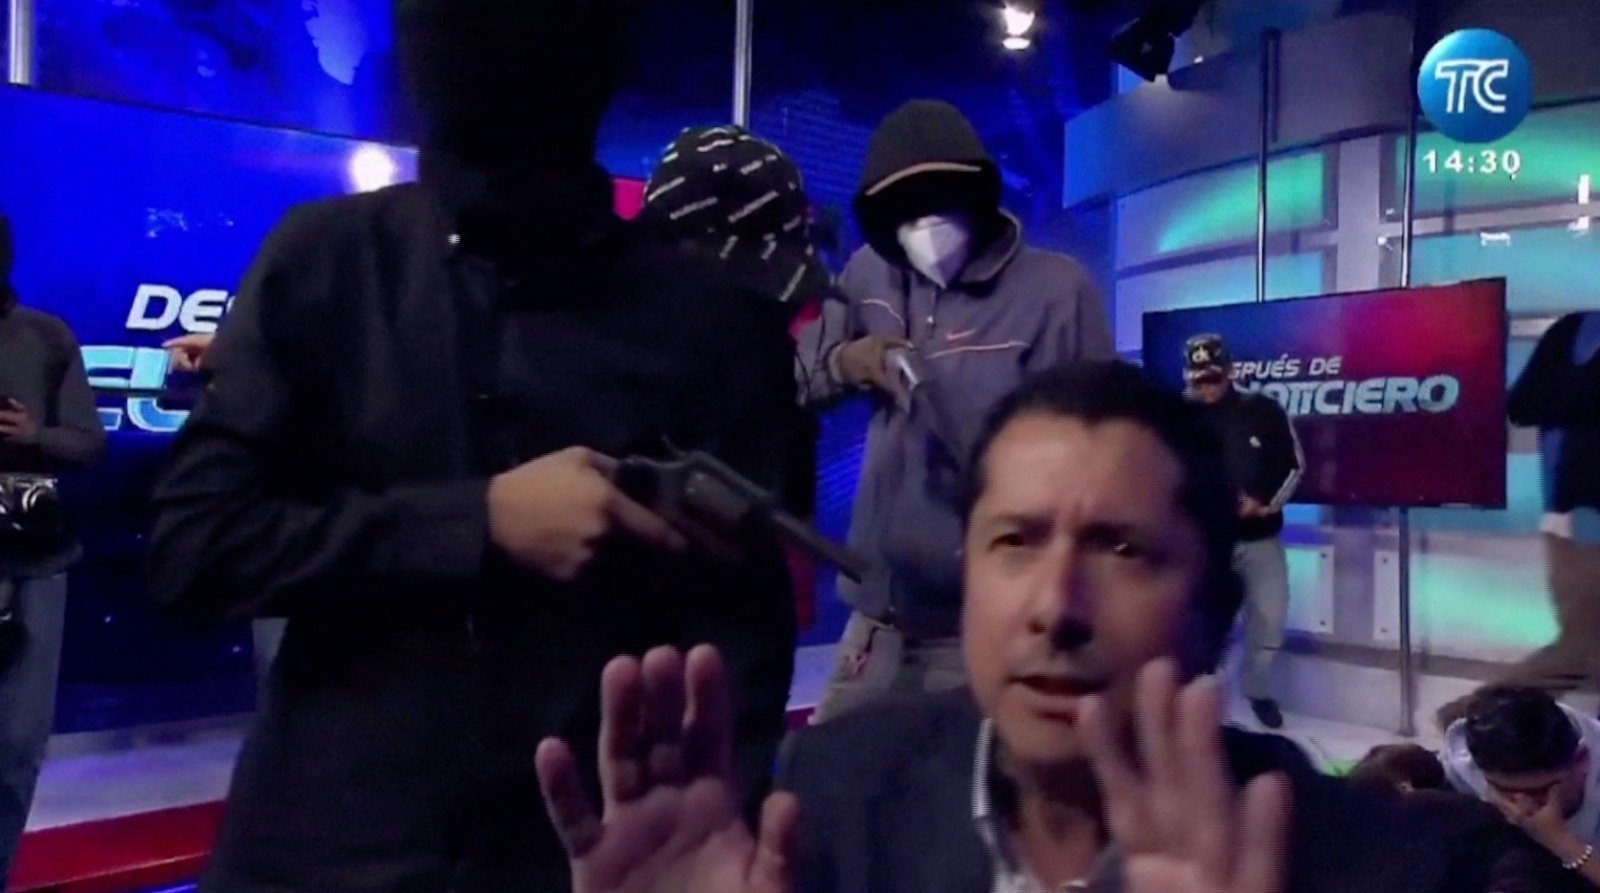 周二在厄瓜多尔TC电视台，蒙面枪手闯入后用枪指著电视节目主持人卡尔德隆，接管了电视直播。（图取自路透社）